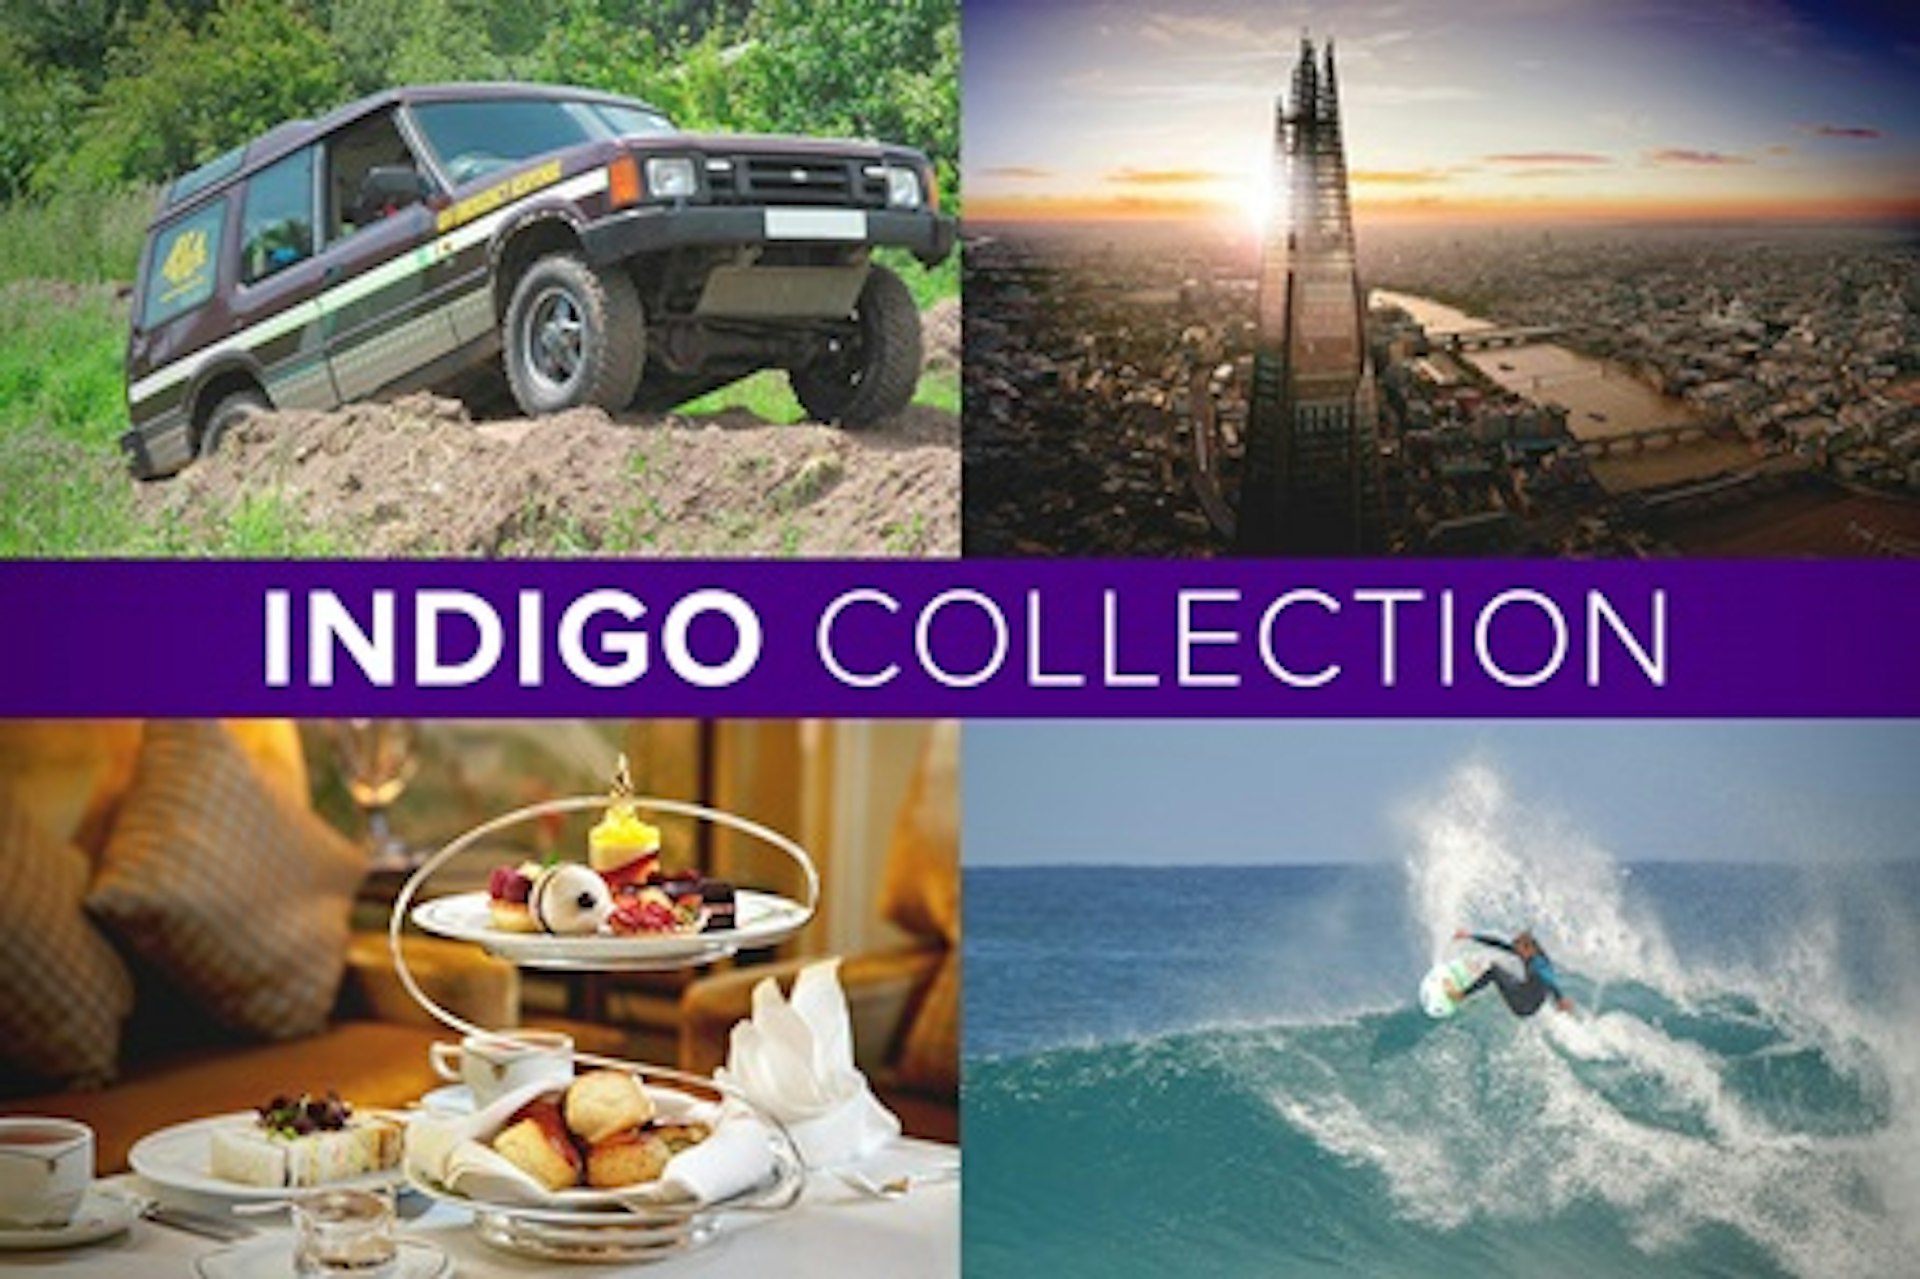 The Indigo Collection 1